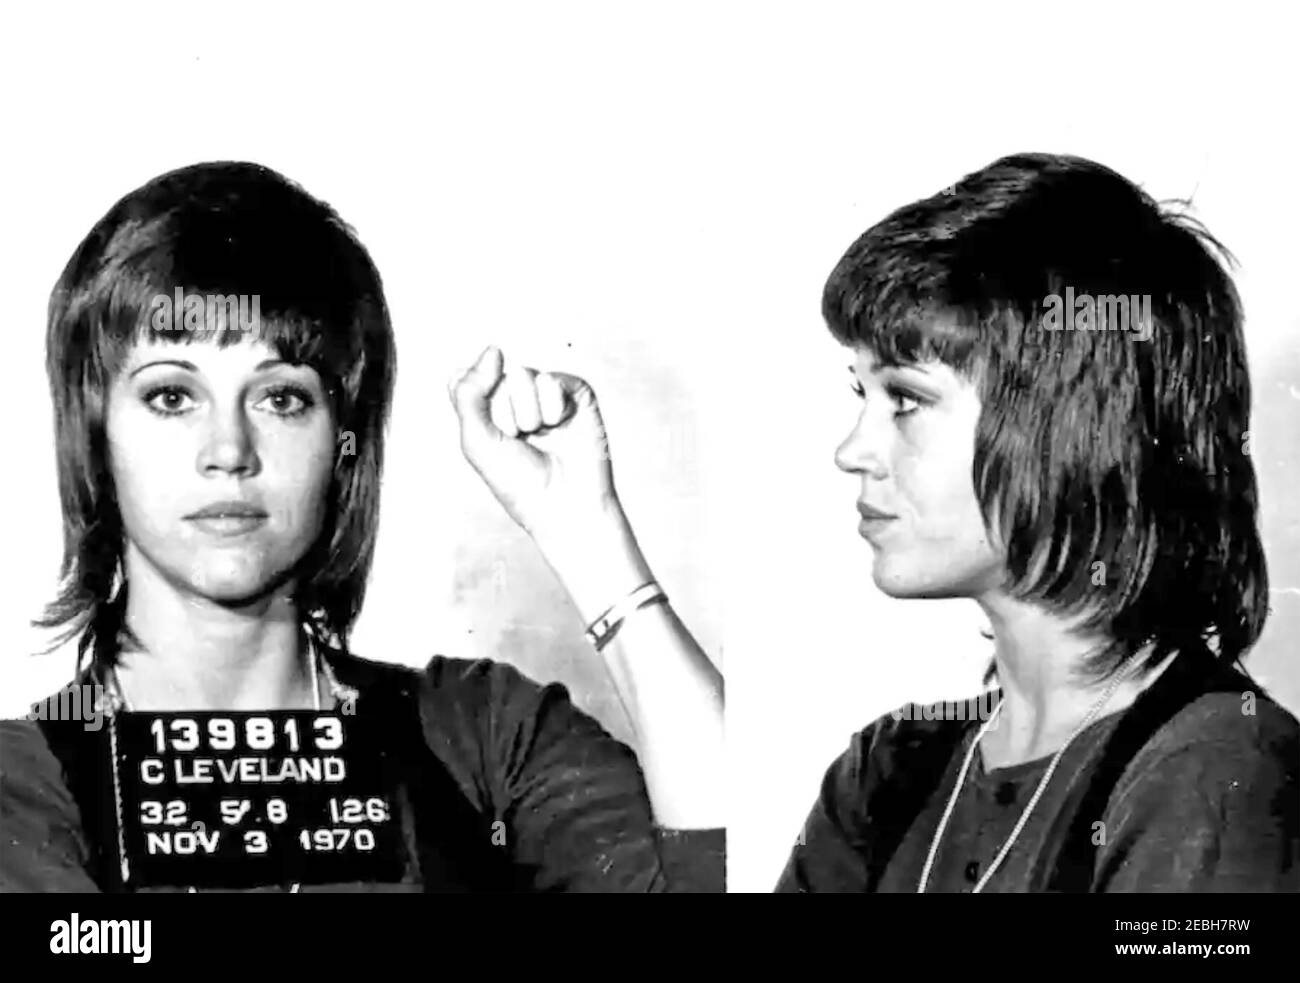 JANE FONDA amerikanische Filmschauspielerin in einem Polizeimissschuss 3. November 1970 nach ihrer Verhaftung wegen erfundeter Anschuldigungen des Drogenschmuggels. Stockfoto